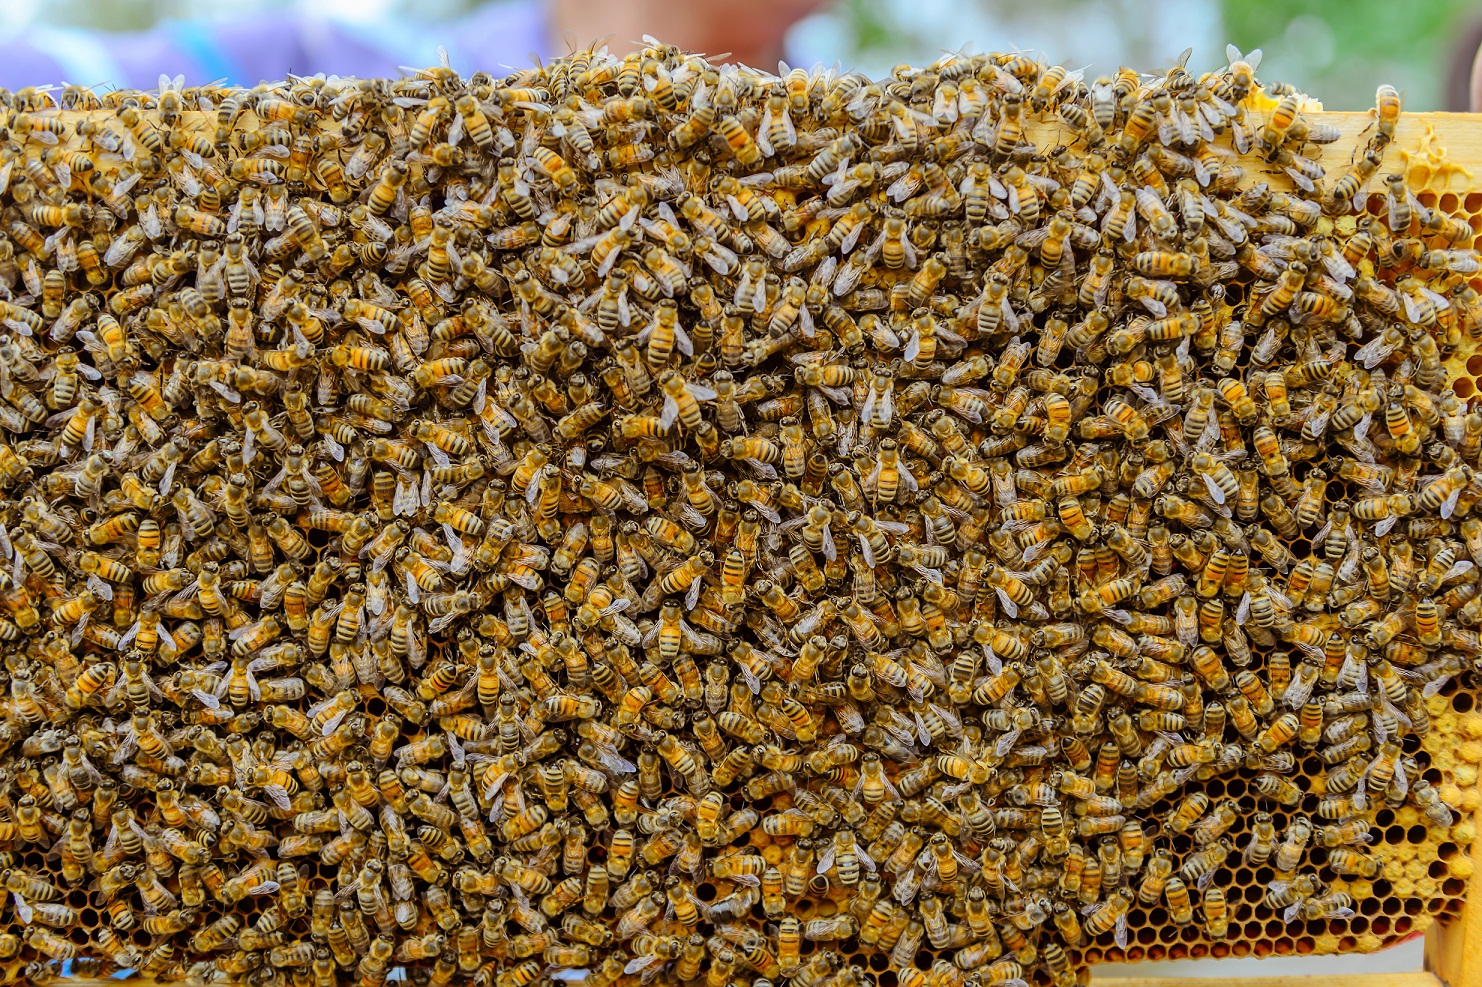 a swarm of honeybees